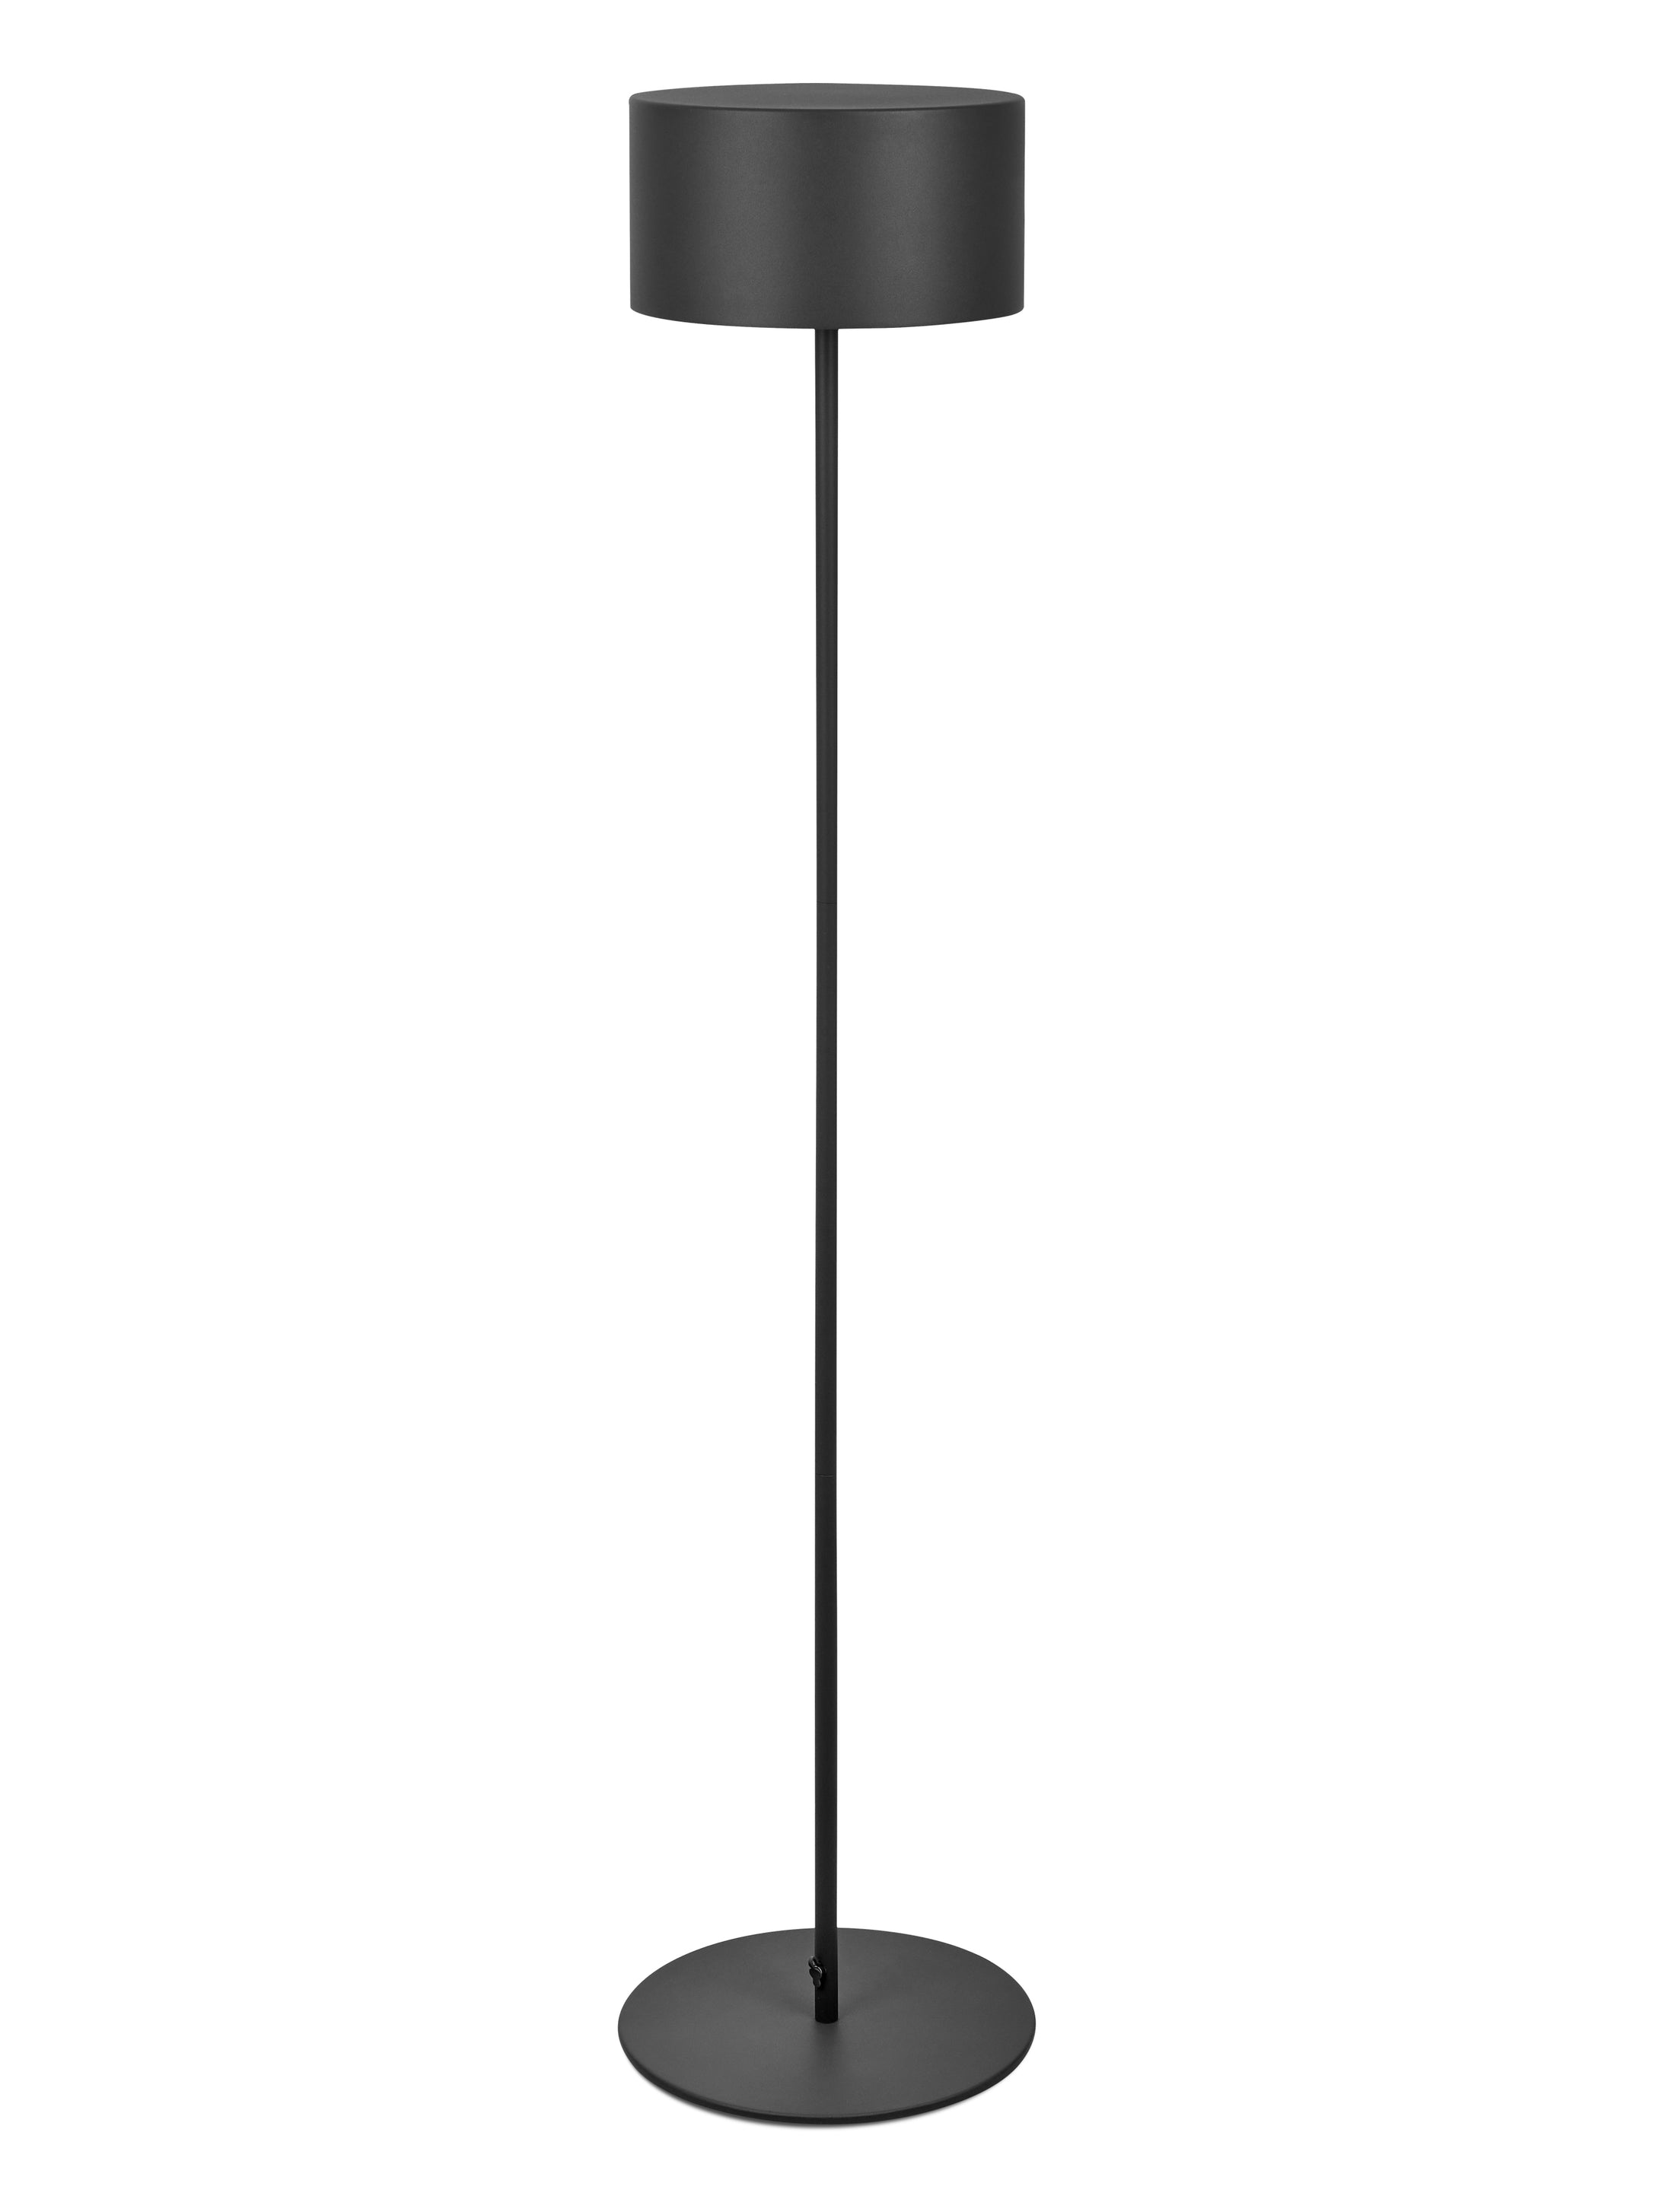 Arnold XL von Moree; runde Outdoor LED-Stehleuchte aus pulverbeschichtetem Aluminium in Anthrazit mit USB Netzteil und Ladestation.